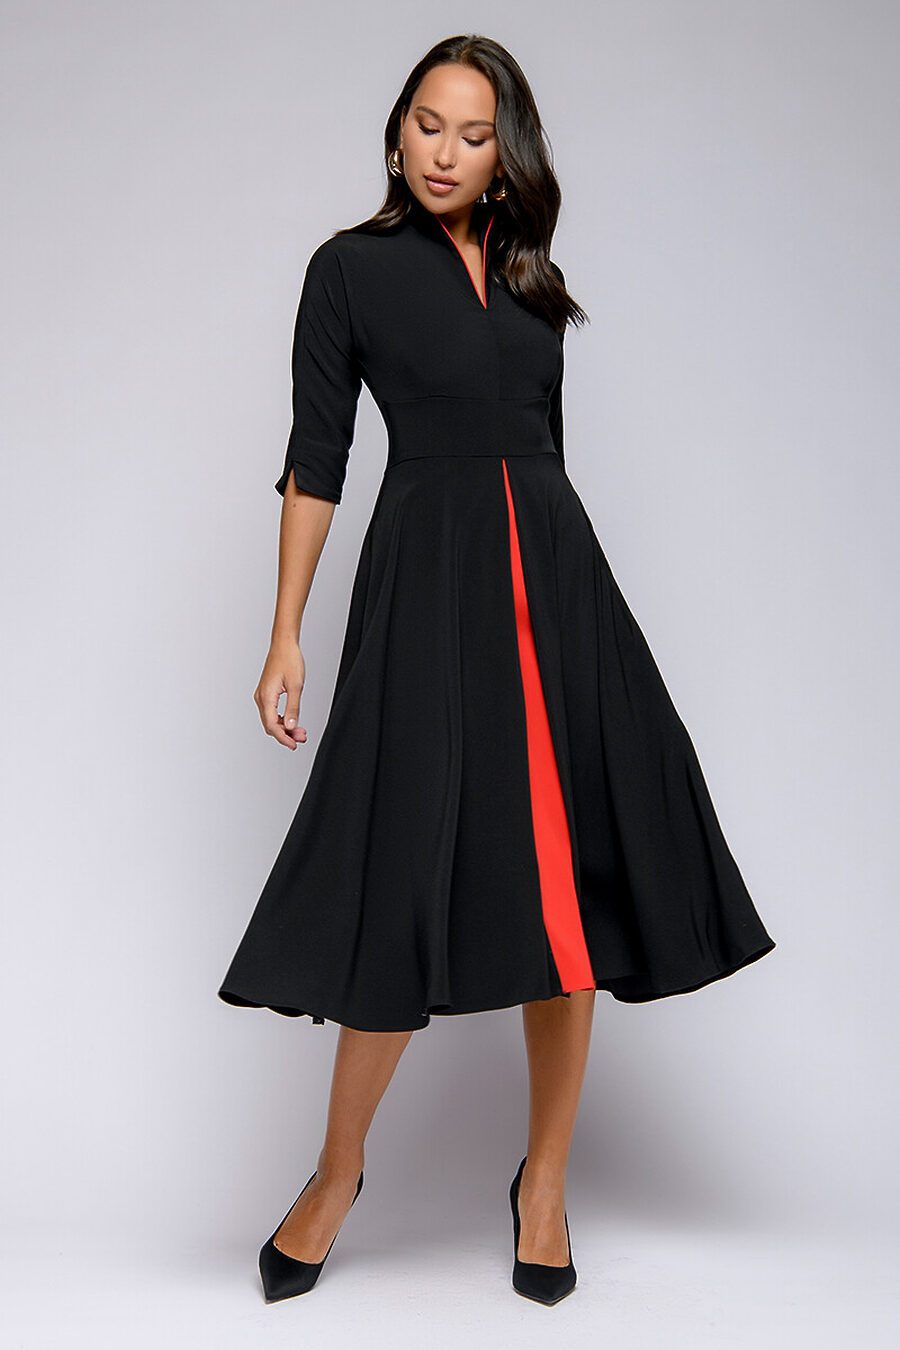 Платье для женщин 1001 DRESS 785623 купить оптом от производителя. Совместная покупка женской одежды в OptMoyo